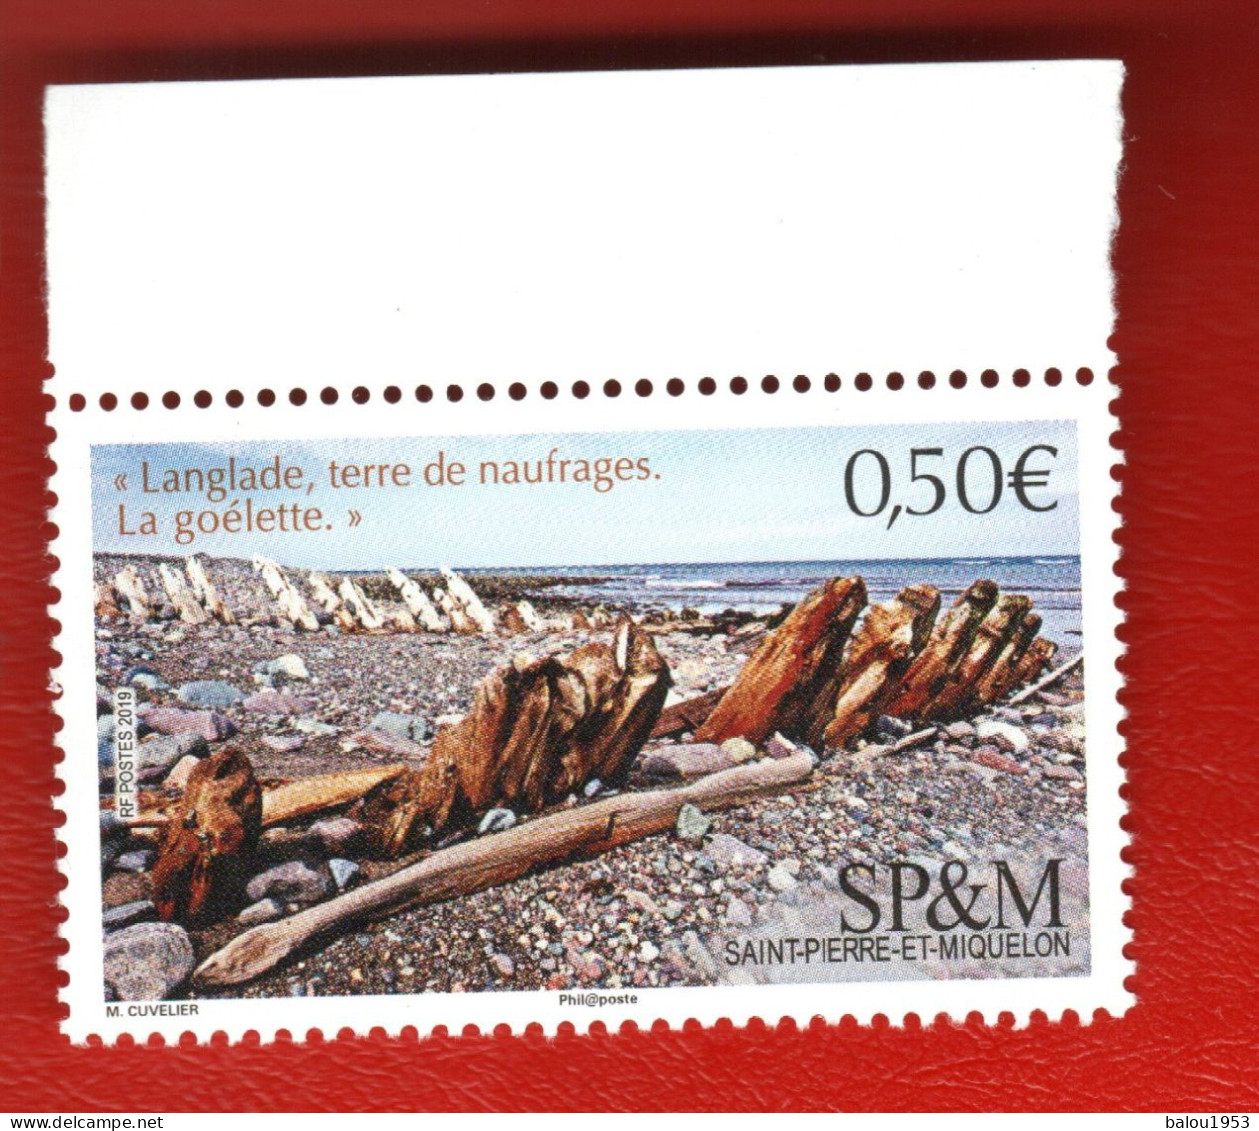 Saint-Pierre-et-Miquelon. Poste 2019. N° 1215. Neuf. Vendu à La Facial. - Unused Stamps